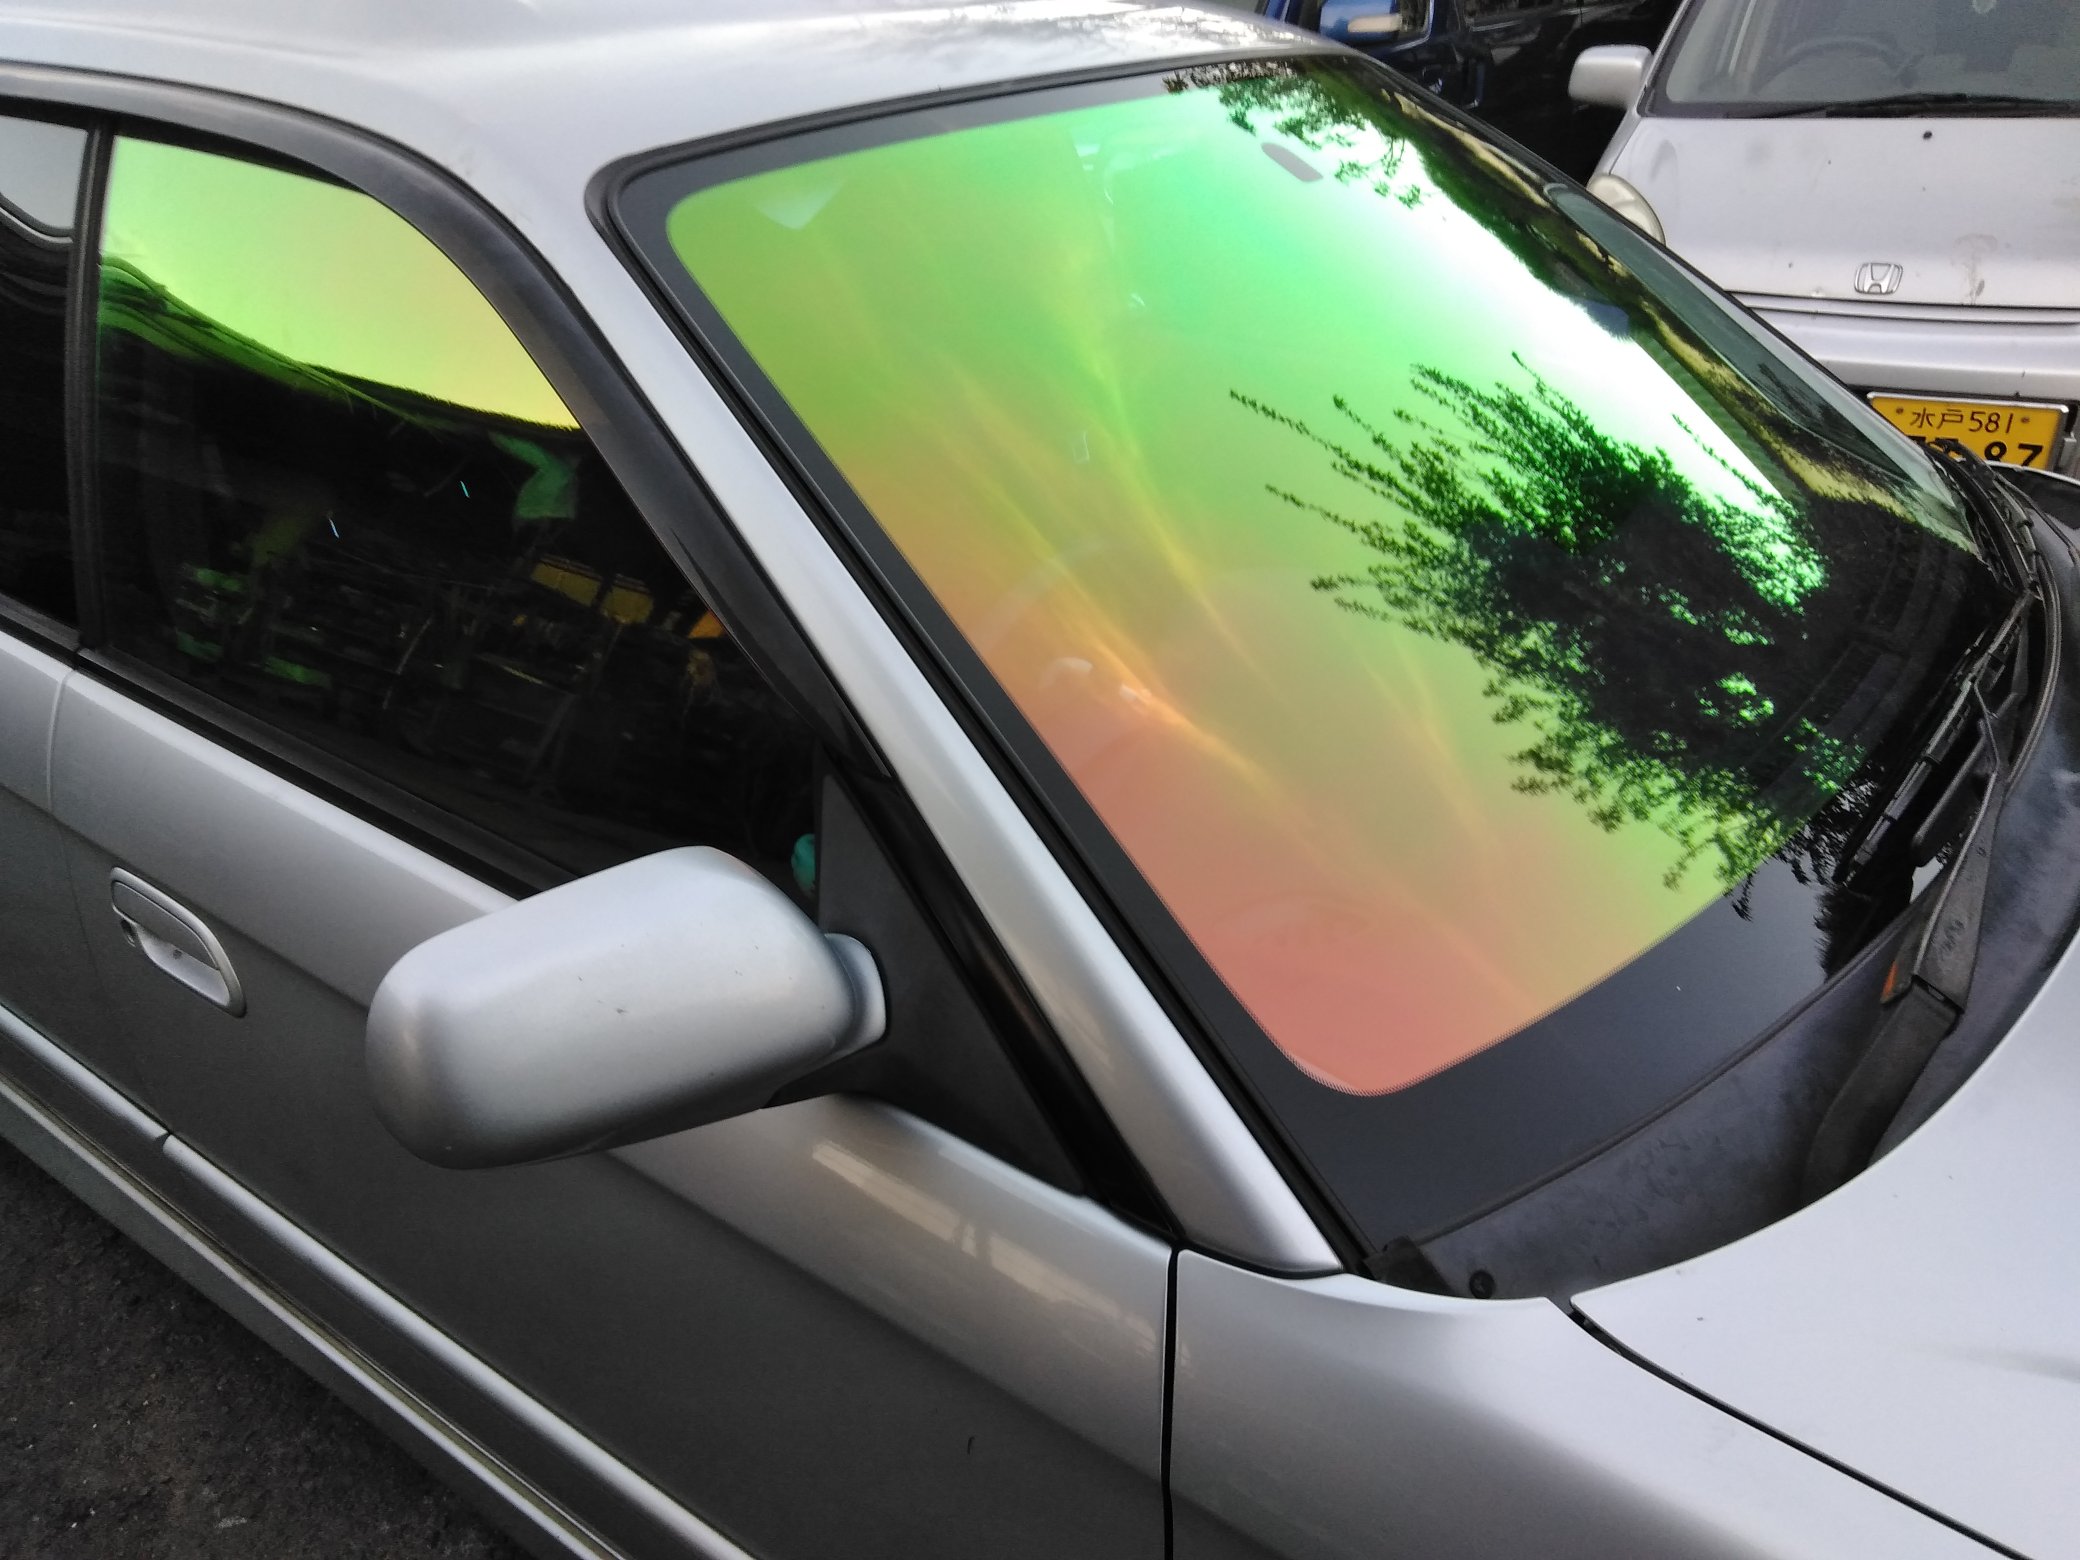 クラウド工業 公式 今日はお客様のお車のフロントガラスにフィルムを貼りました 良い色だと思います 車検対応 ありがとうございました ファンキーゴースト クラウドオートワークス カーフィルム 保安基準適合 T Co Vugqrmhabs Twitter